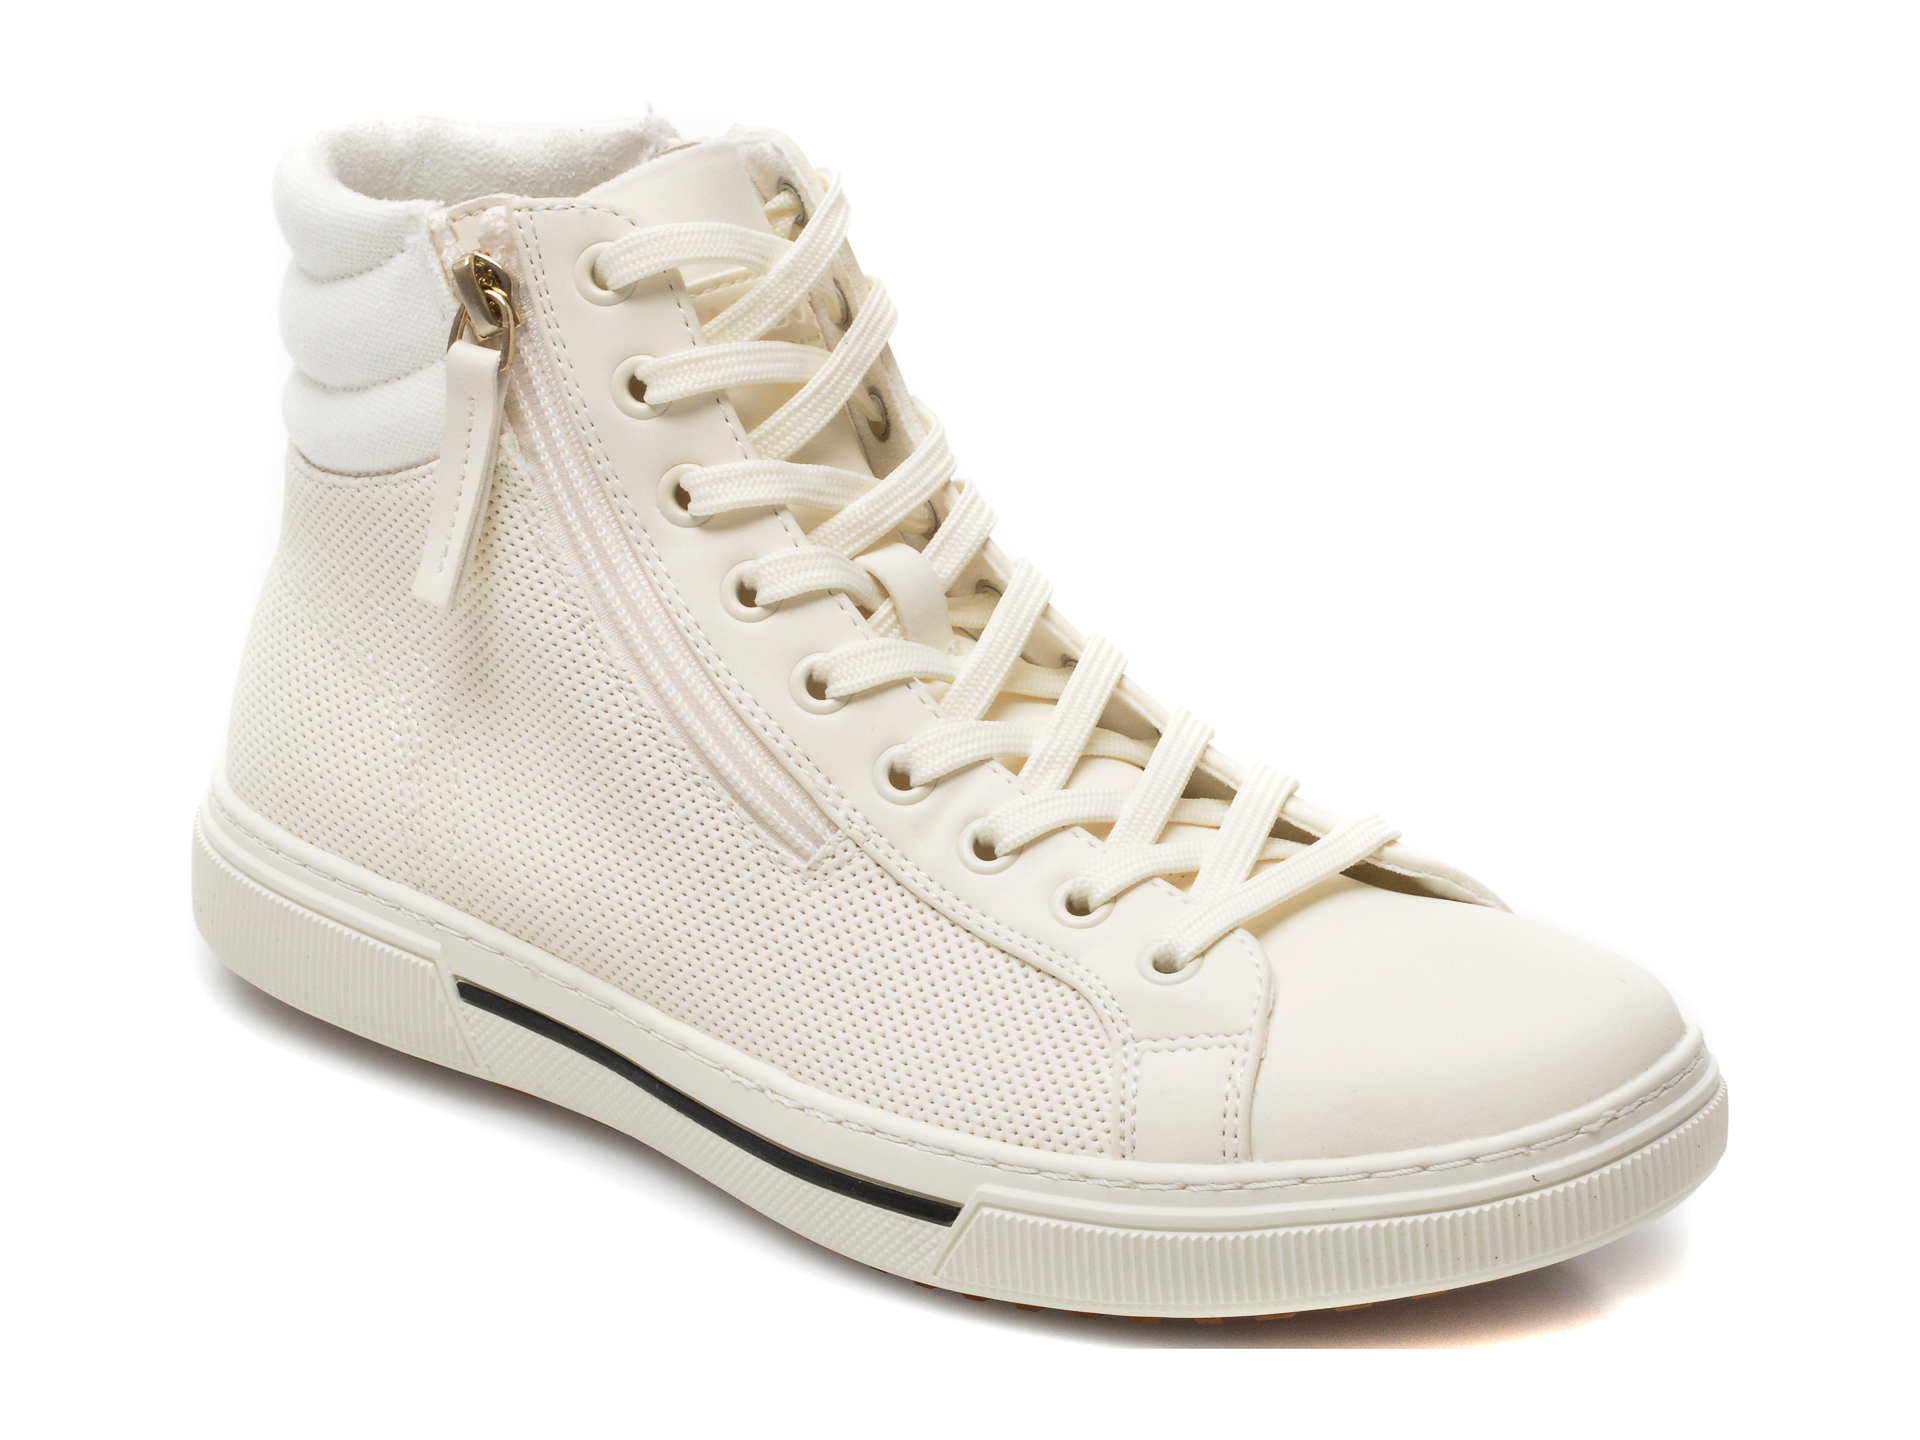 Pantofi sport ALDO albi, Artisan100, din piele ecologica Aldo